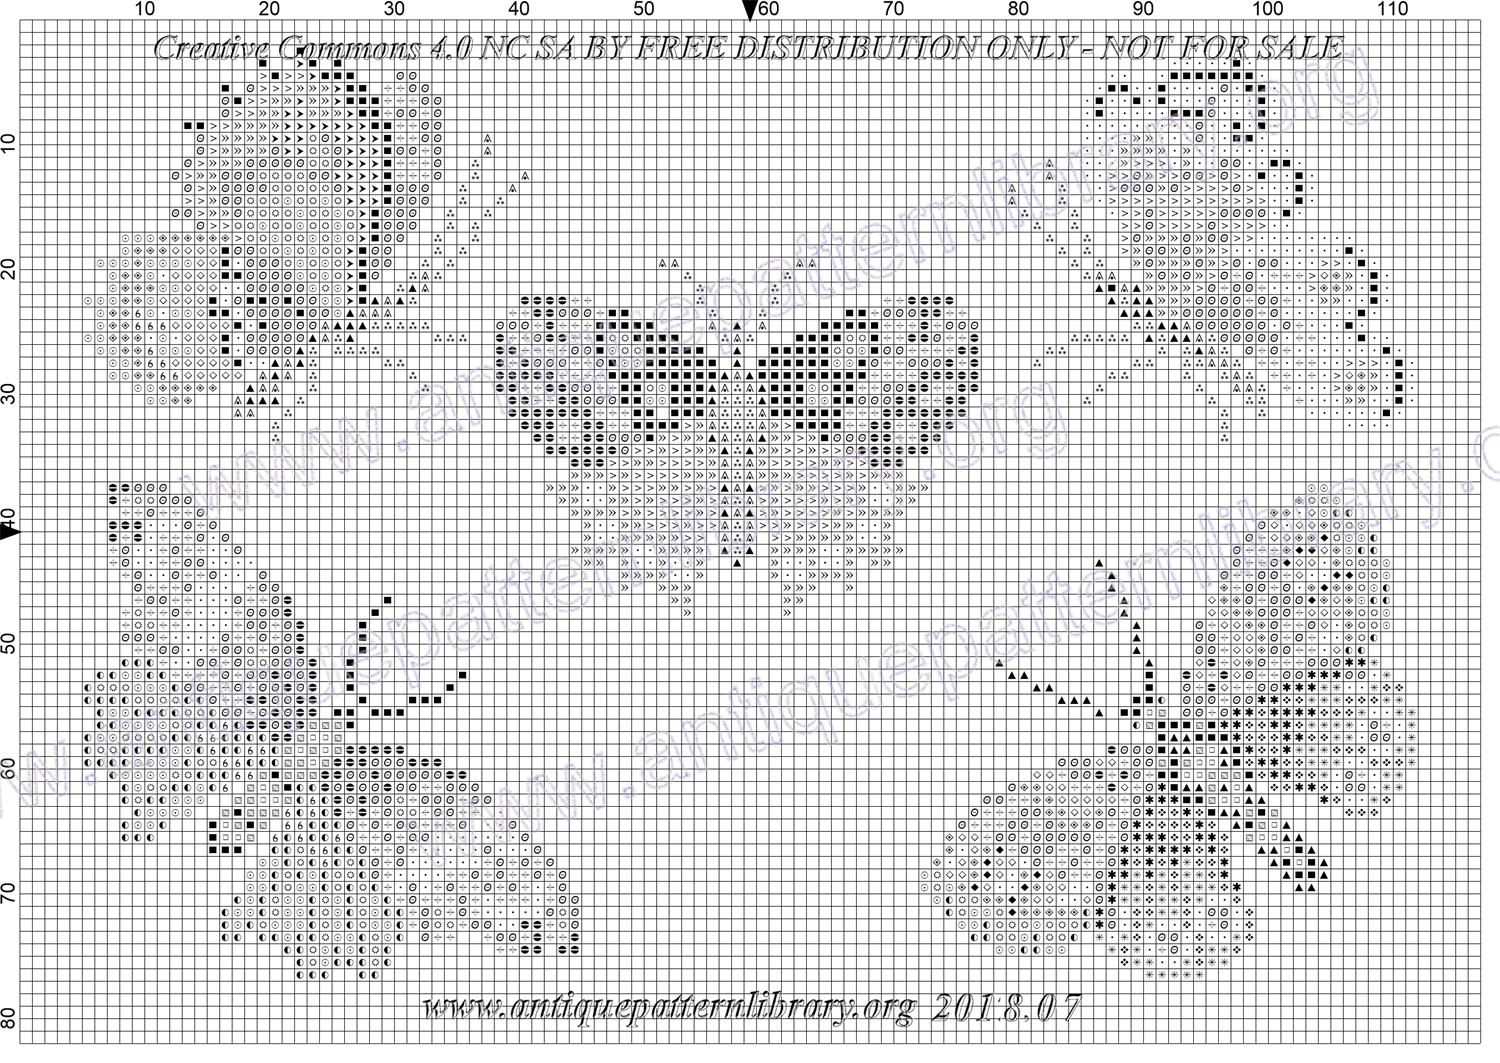 I-XX001 Butterflies